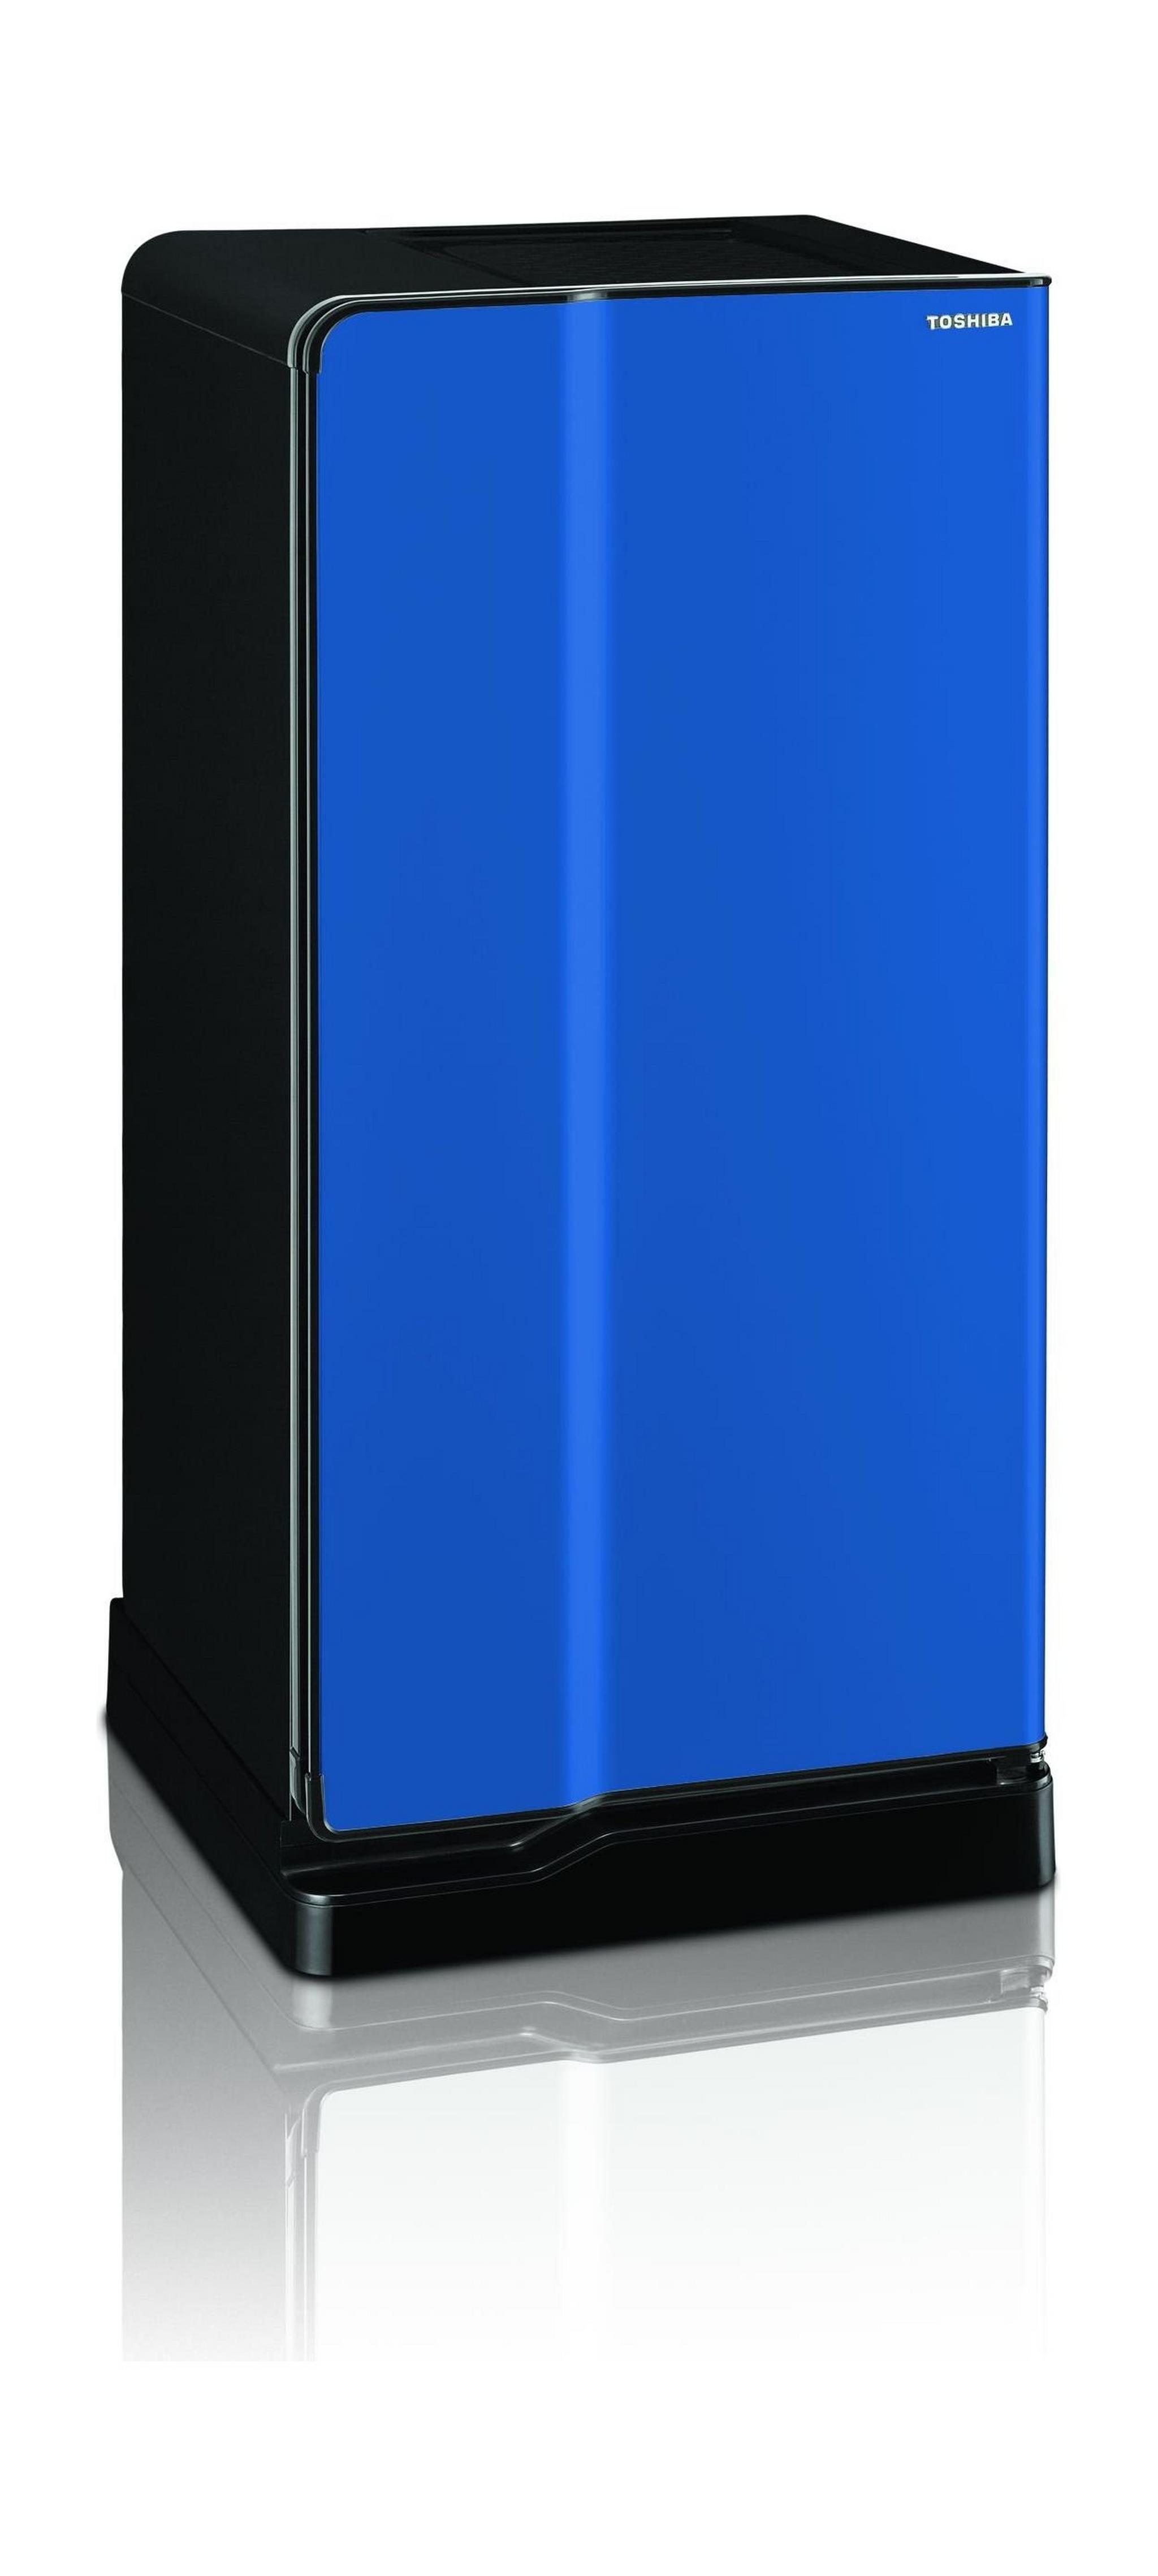 Toshiba 6.4 Cft. Single Door Refrigerator (GRE1837) - Blue